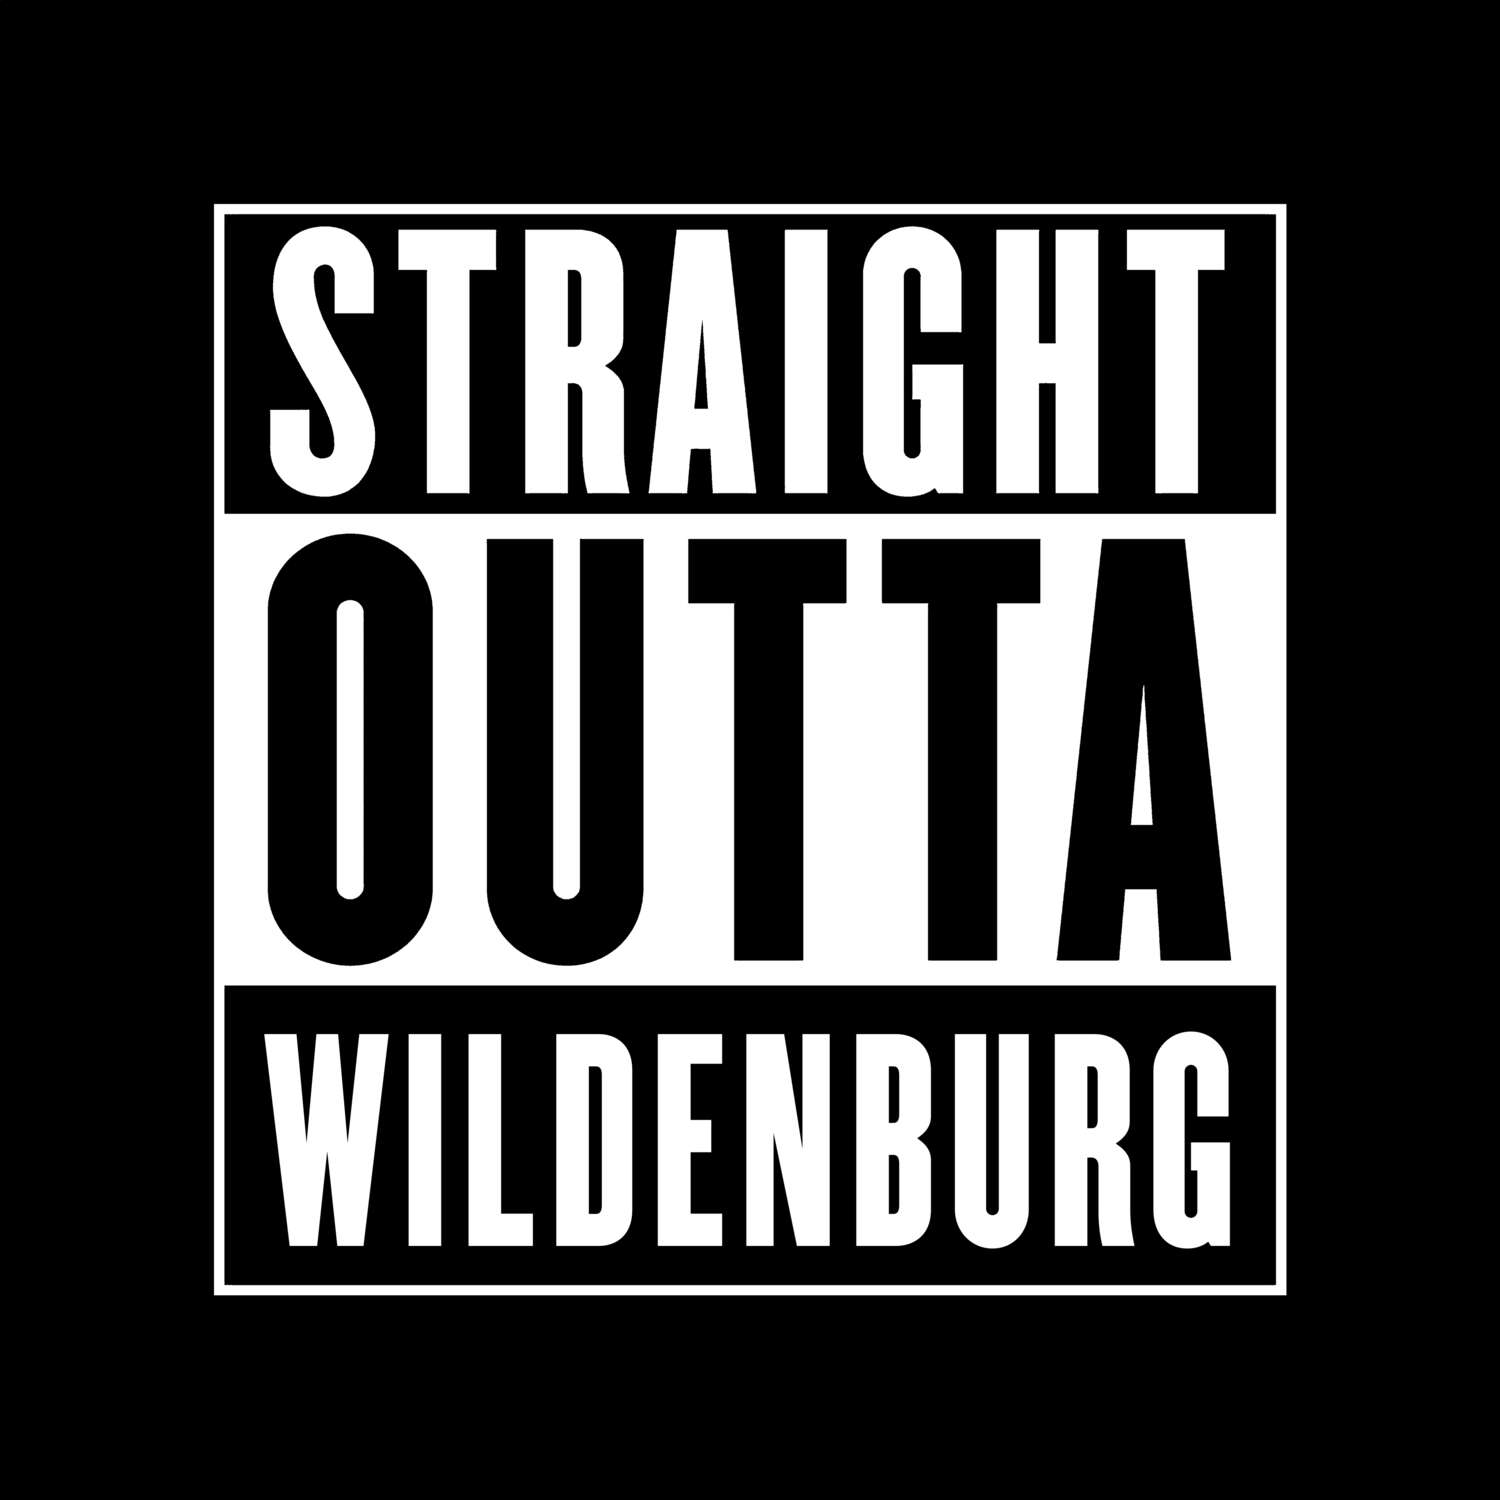 Wildenburg T-Shirt »Straight Outta«